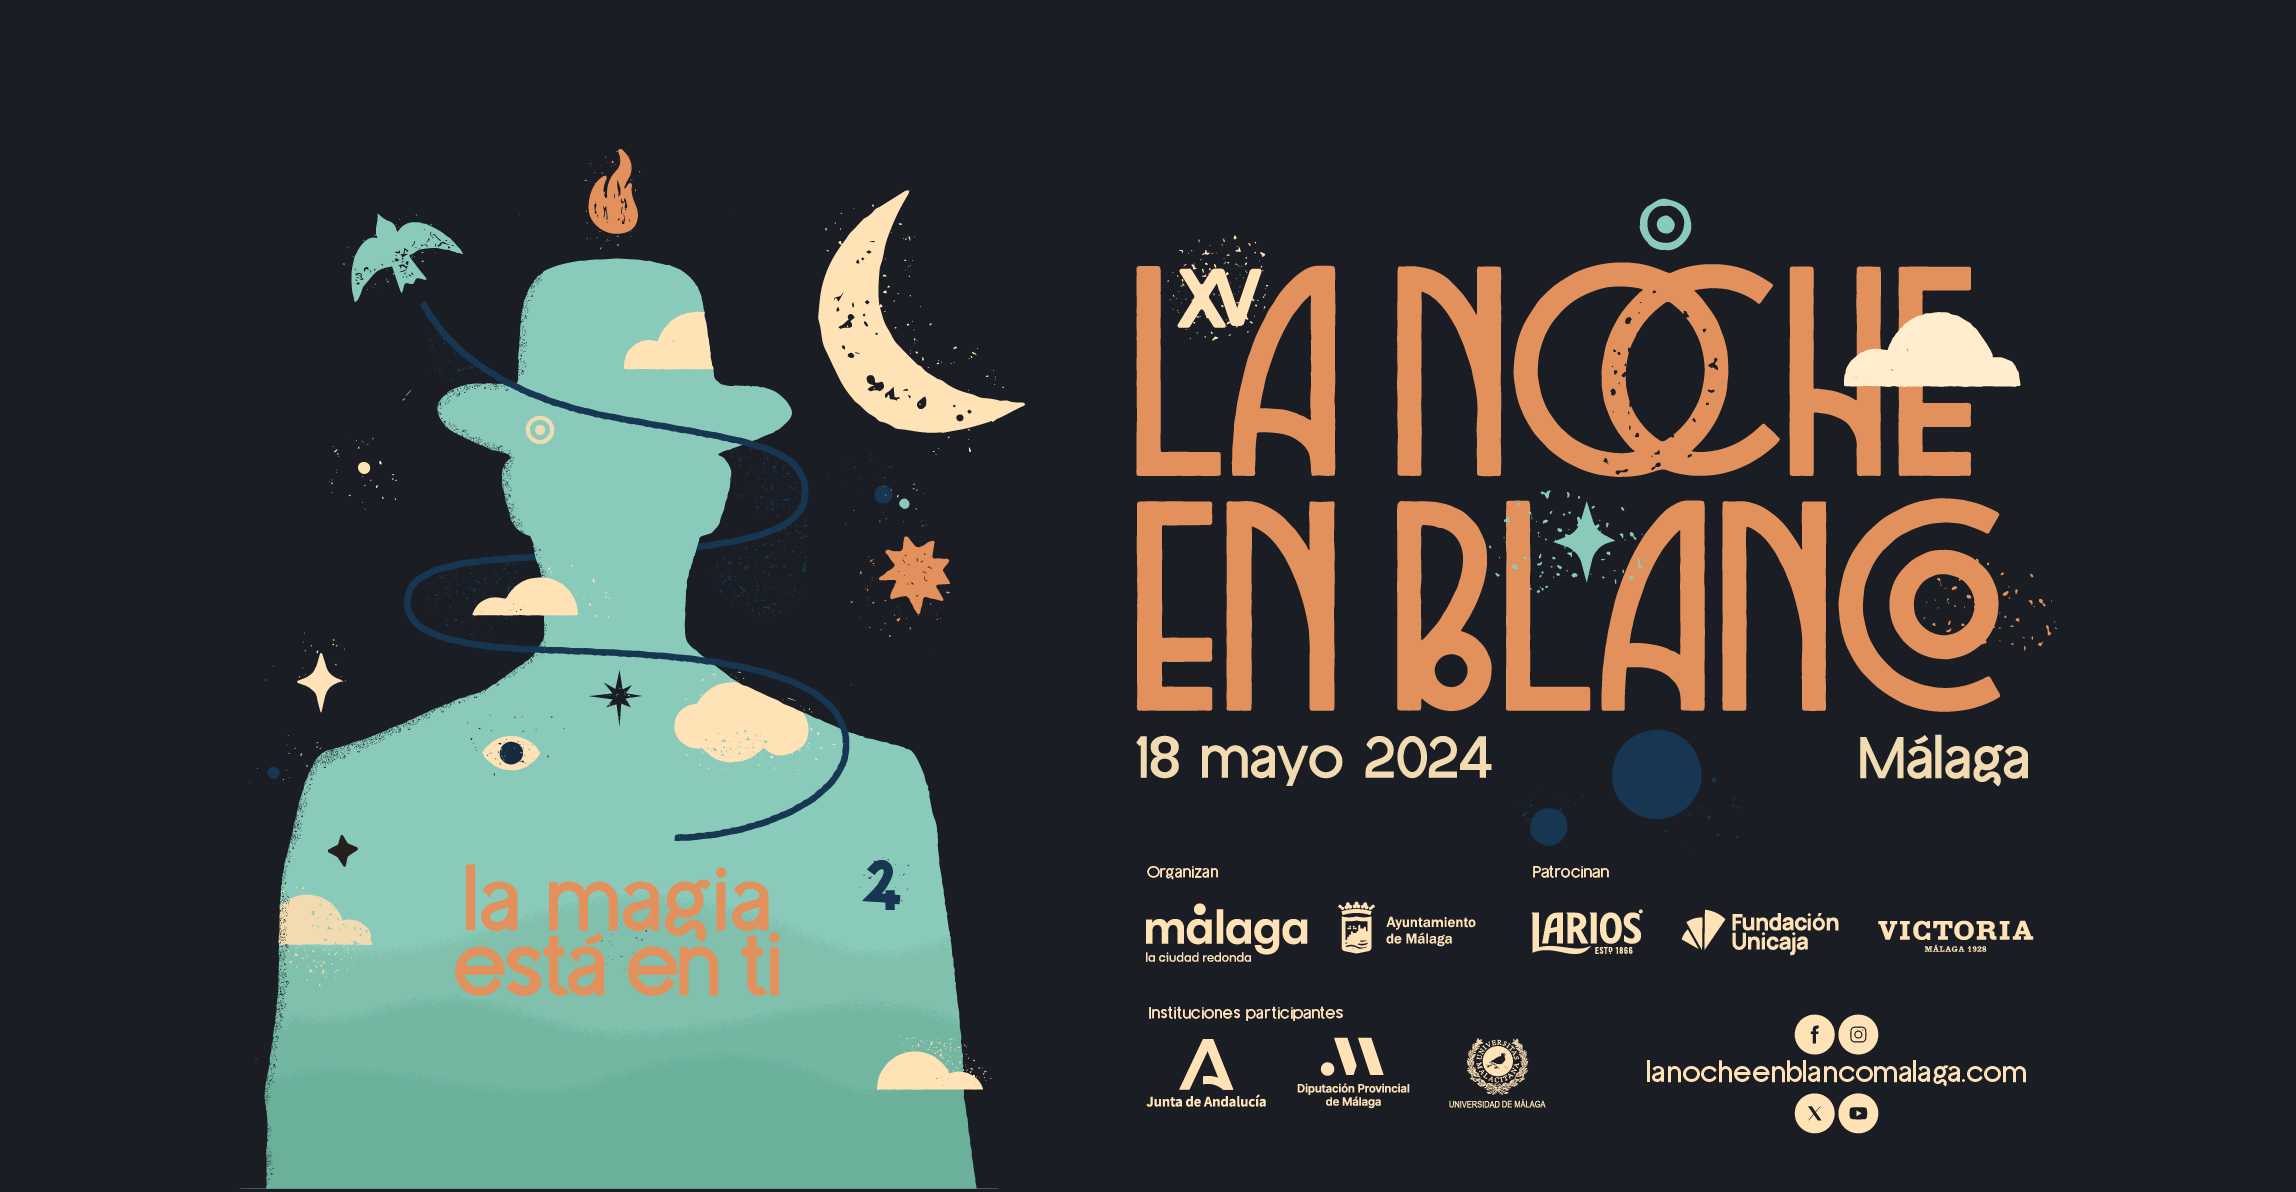 Sintora-artista-Noche-en-Blanco-Malaga-2024-exposicion-cultura-arte-escultura-2296x1192